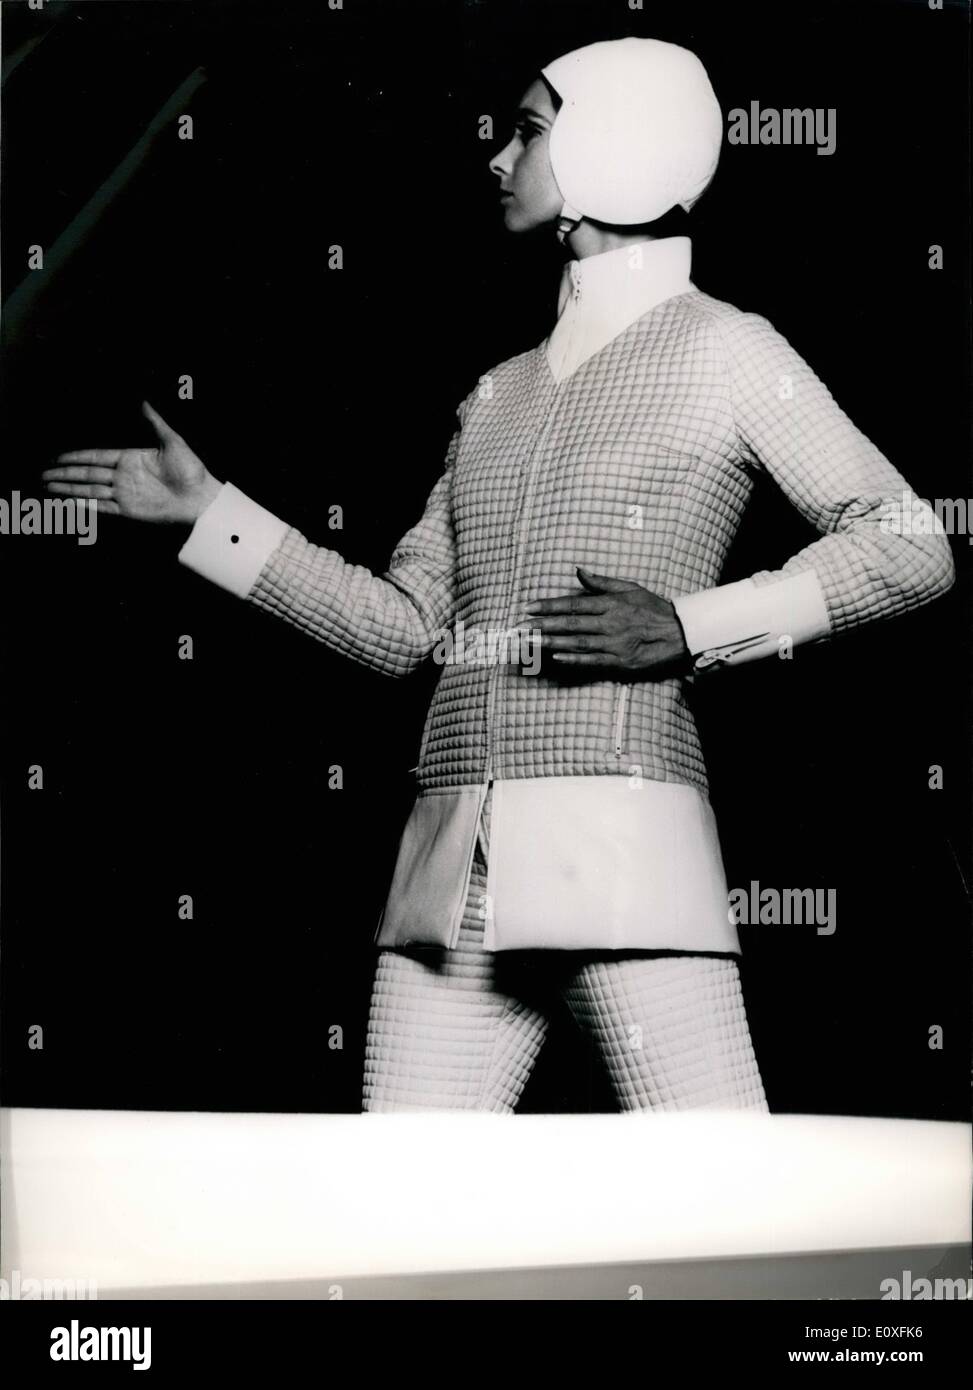 Sett. 09, 1966 - sport invernali moda in mostra: sport invernali mode vengono ora mostrati da Parigi dress maker specializzato un indumento sportivo.mostra fotografica di Ski-ING vestito. Foto Stock